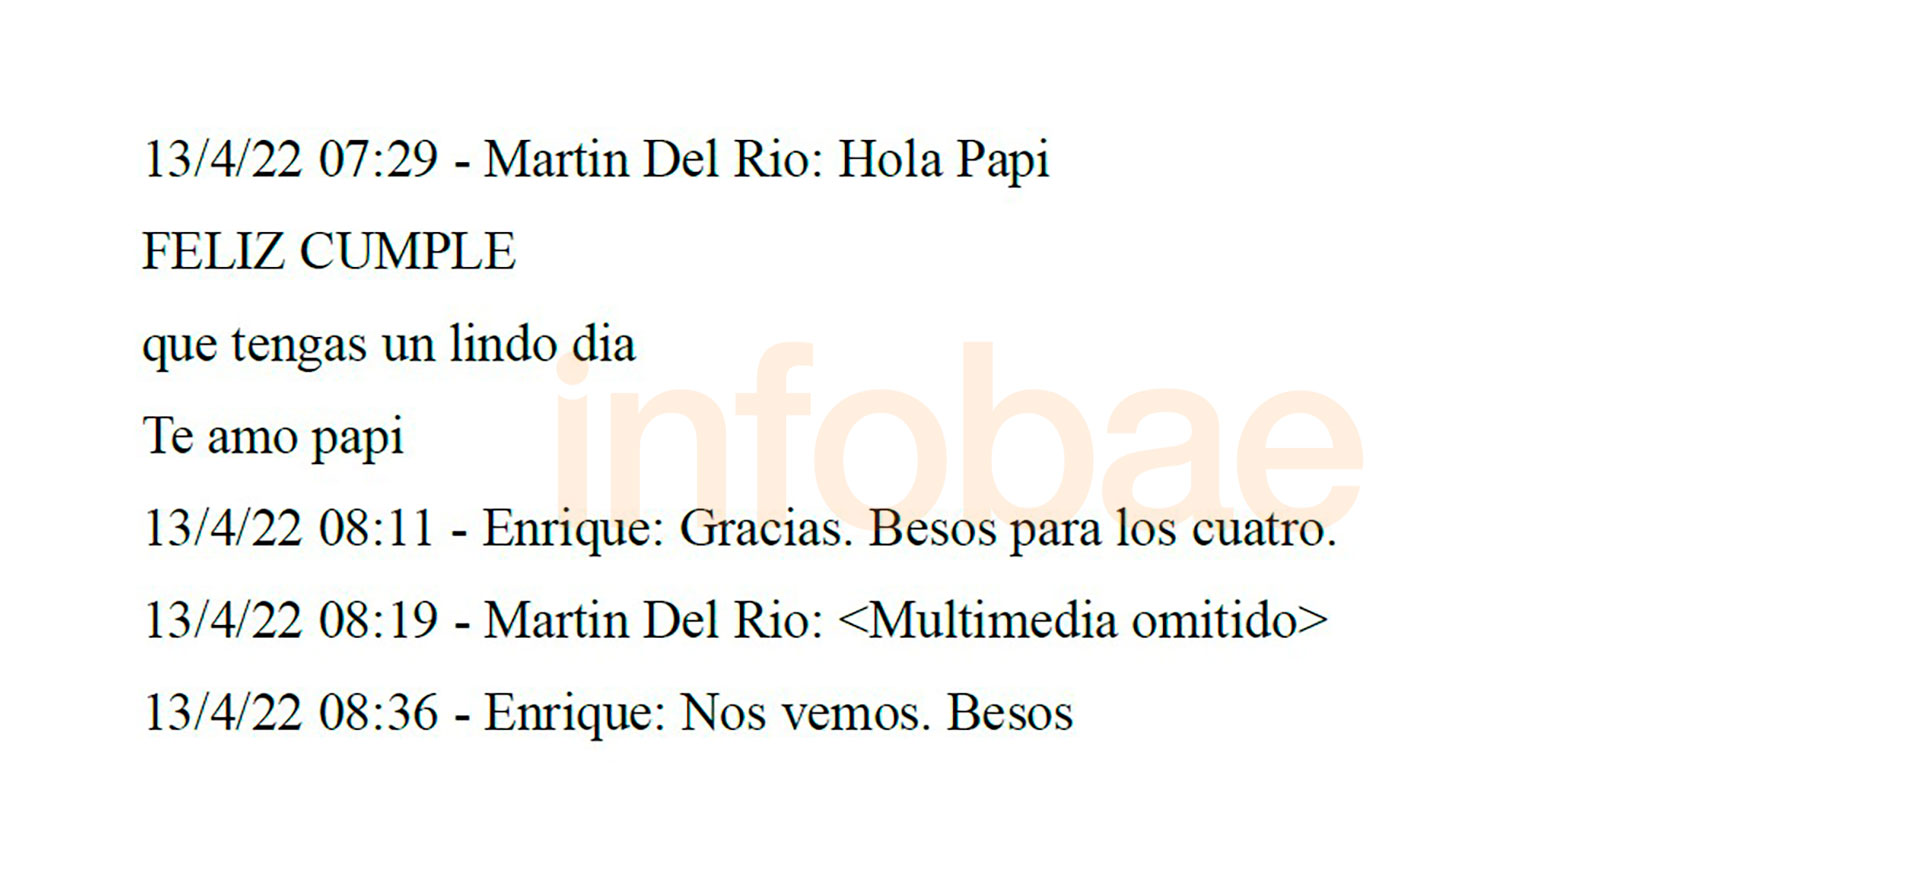 El mensaje de feliz cumpleaños de Martín Santiago del Río a su padre